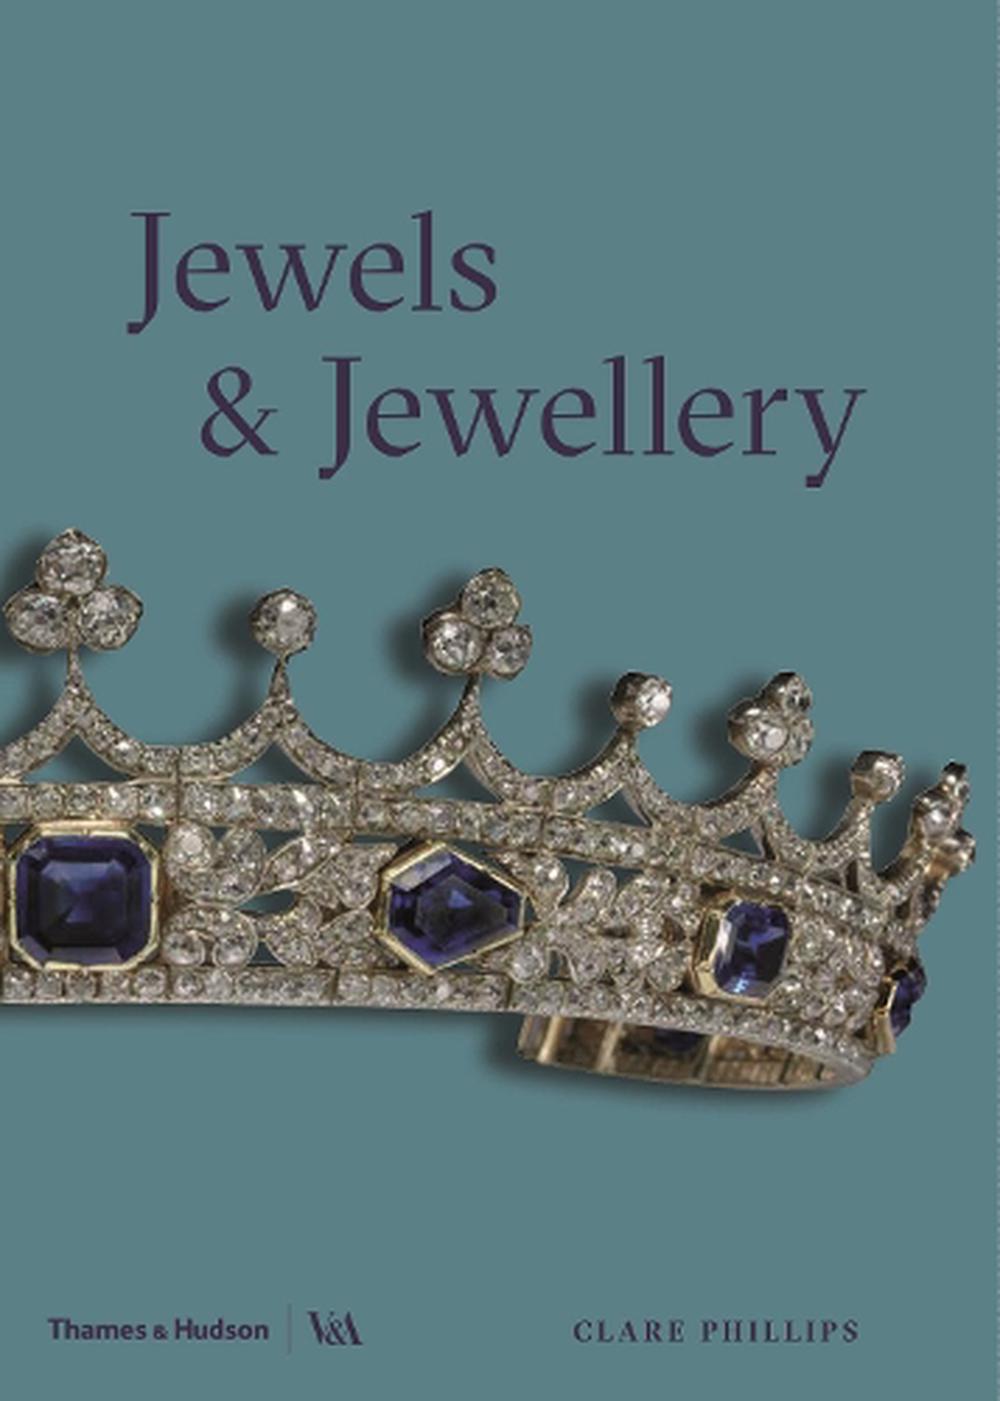 Jewels & Jewellery - image 1 of 1